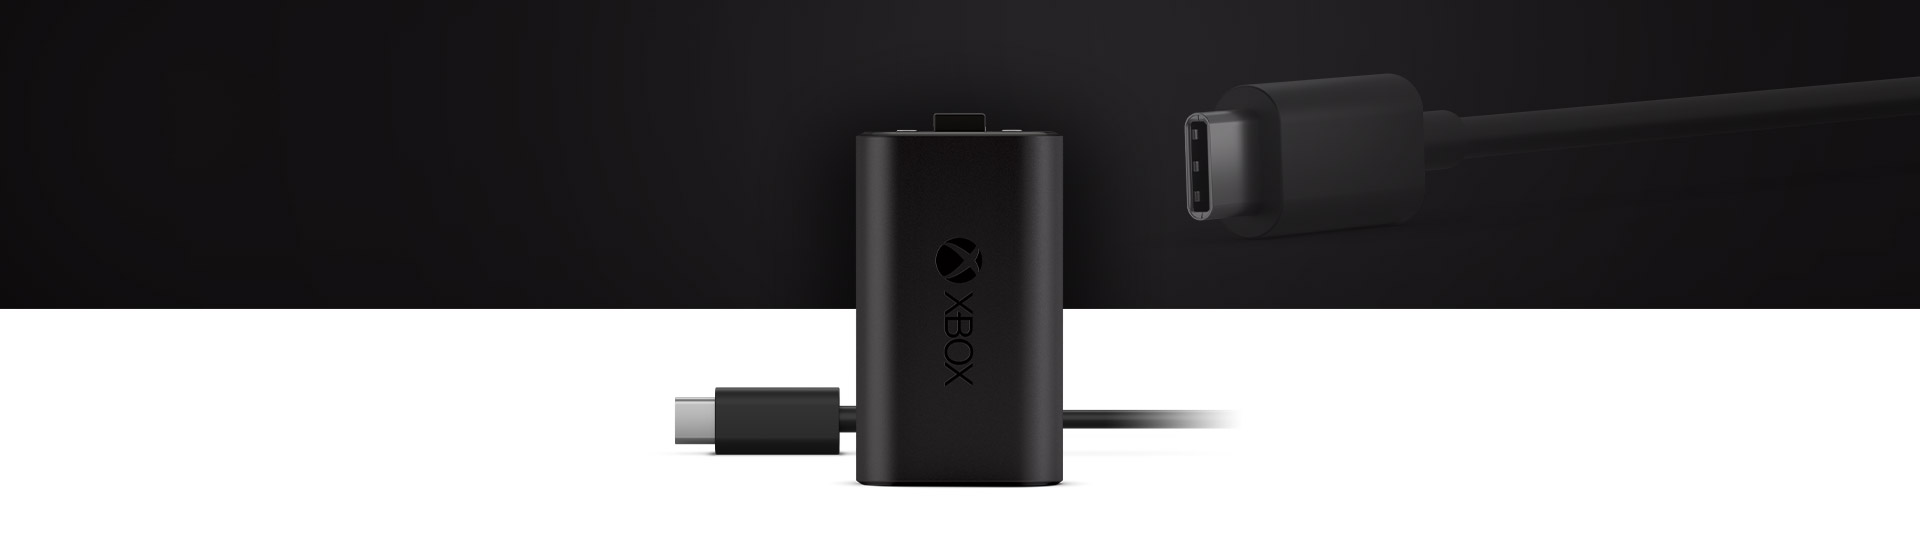 Xbox charge kit - Die hochwertigsten Xbox charge kit auf einen Blick!